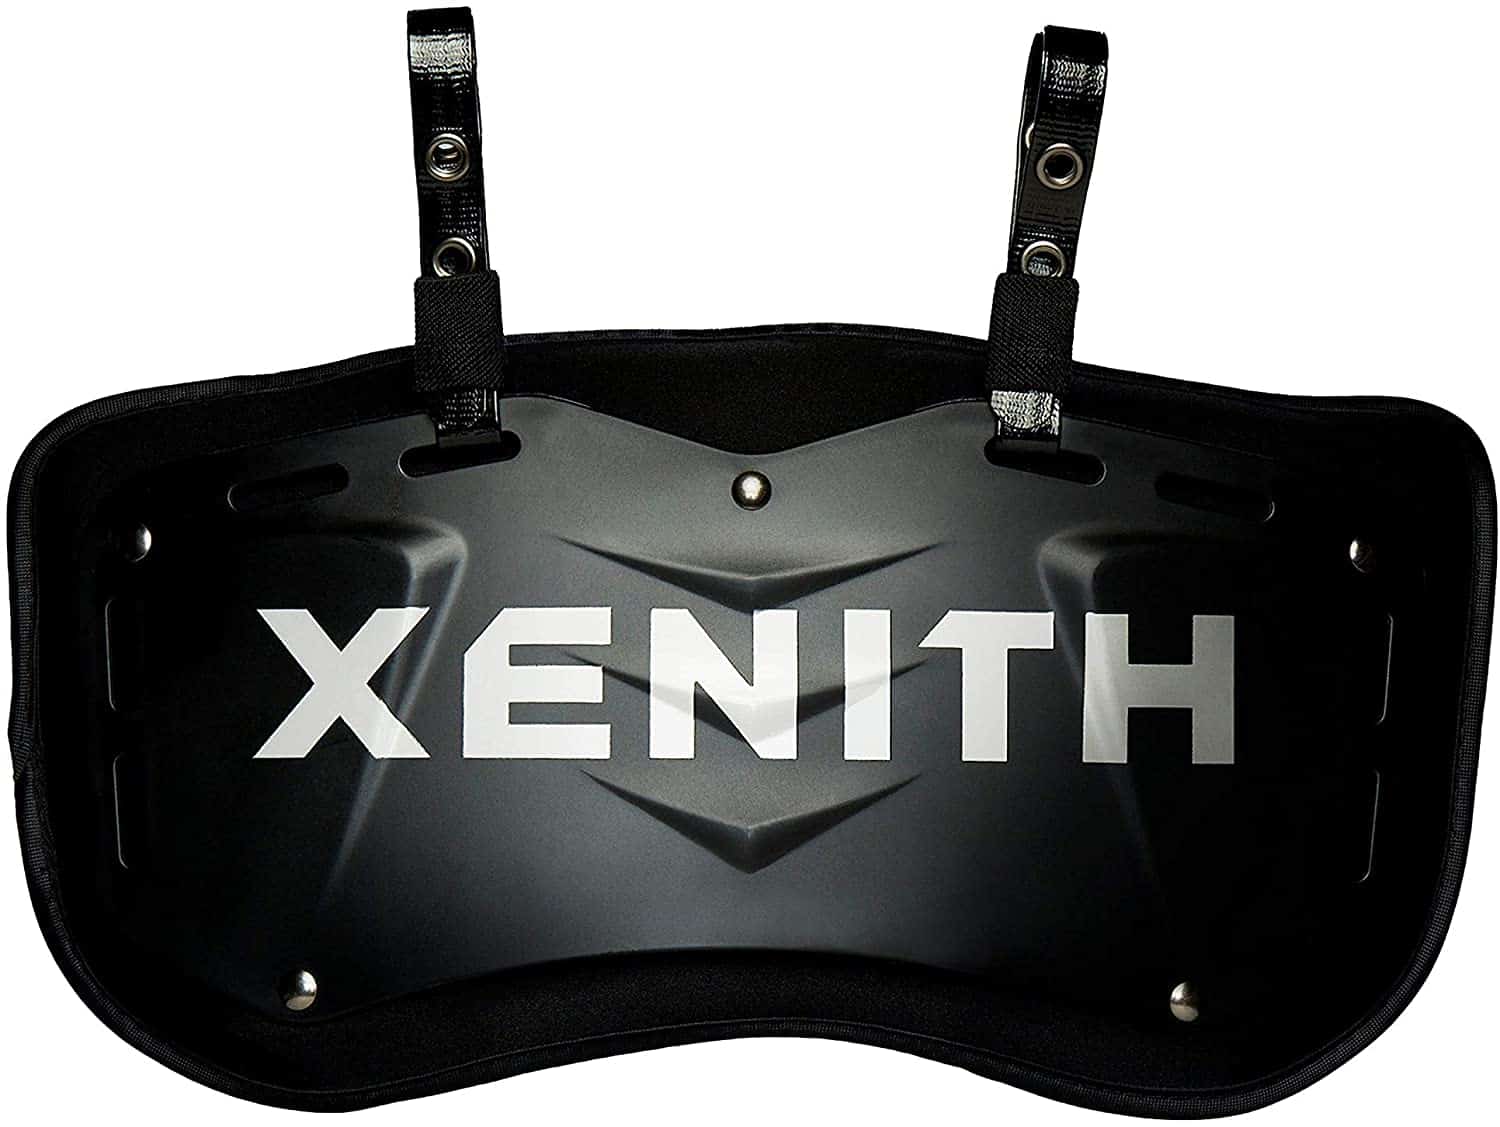 แผ่นหลังที่ดีที่สุดสำหรับความประทับใจ - Xenith XFlexion